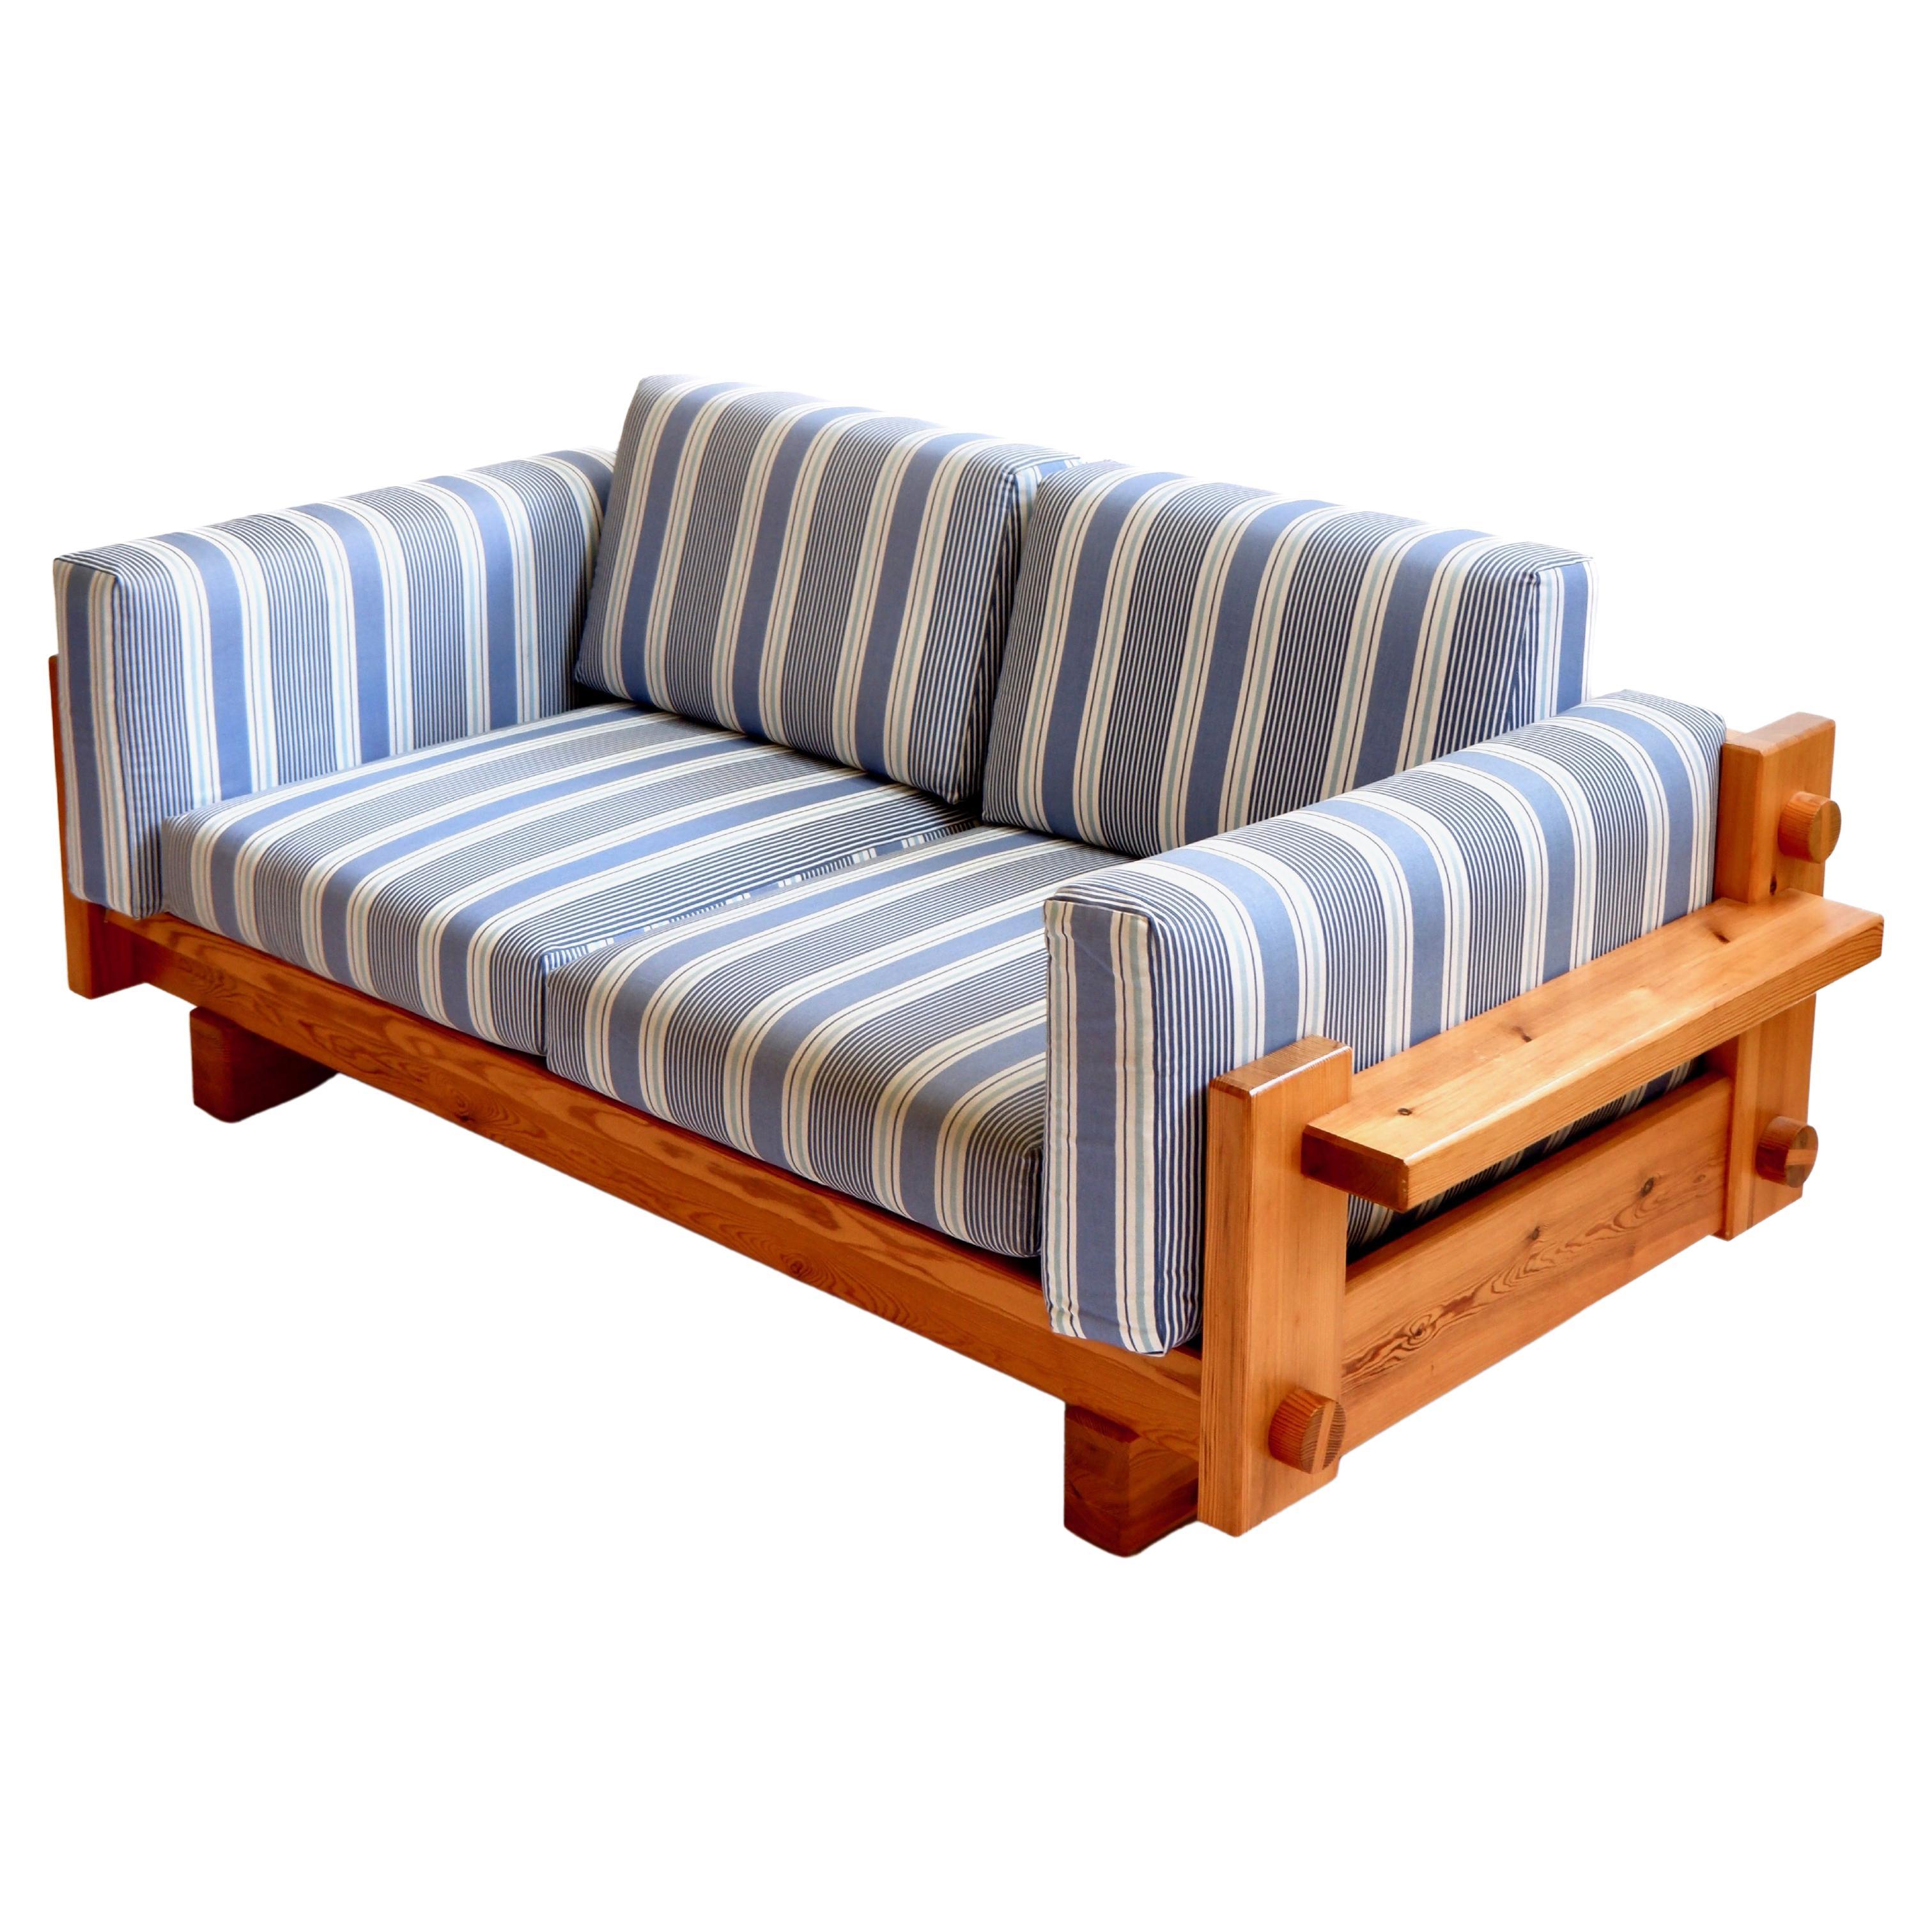 Seltenes Sofamodell Kontrapunkt, entworfen von Yngve Ekström, hergestellt von Swedese Möbler AB in Schweden in den 70er Jahren. Das Sofa ist ein zwei bis drei Seiten Couch in massiver Kiefer und einem Streifen blau orginial Stoff in wirklich gutem